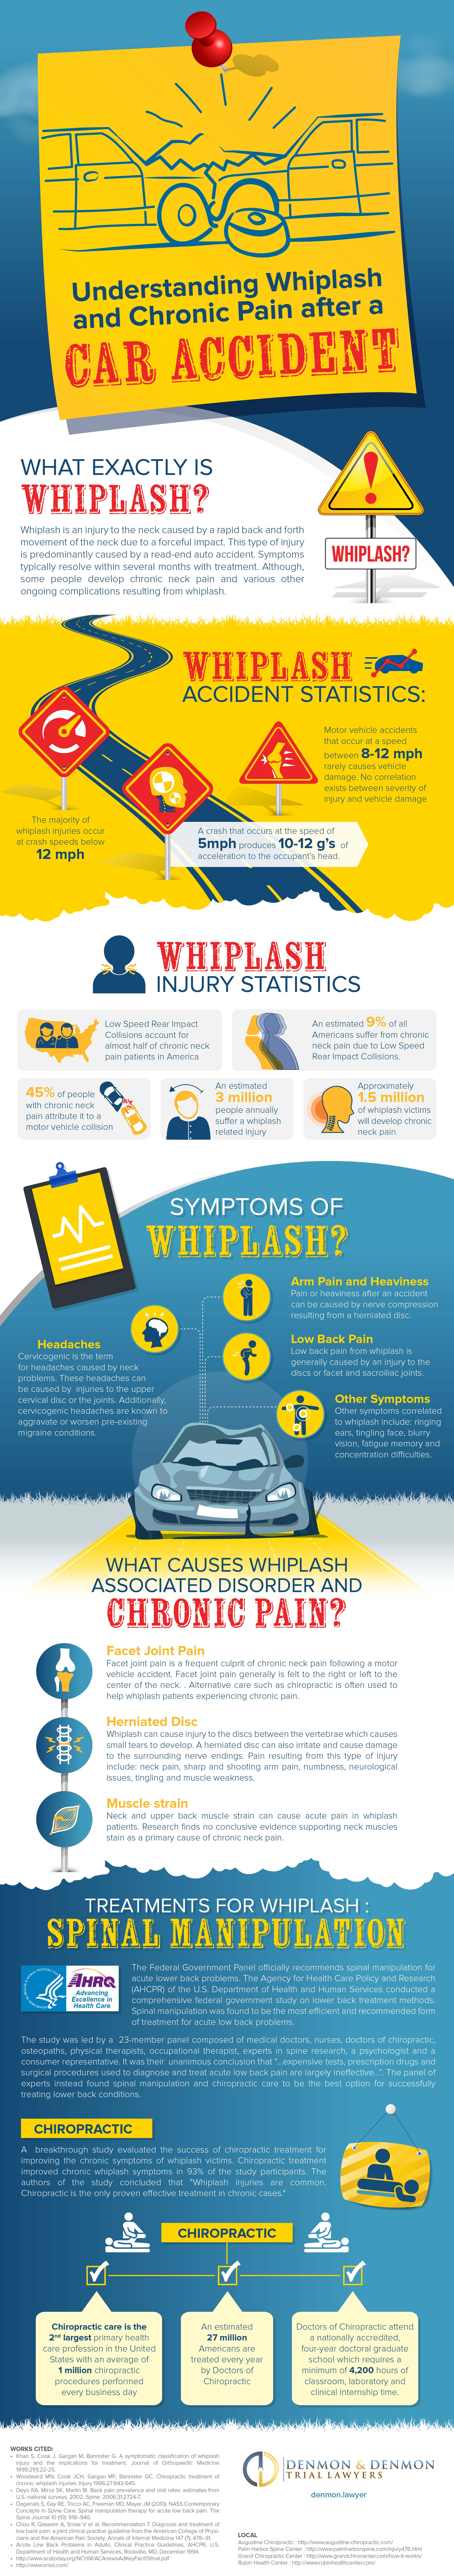 Whiplash-and-Trauma-Infographic